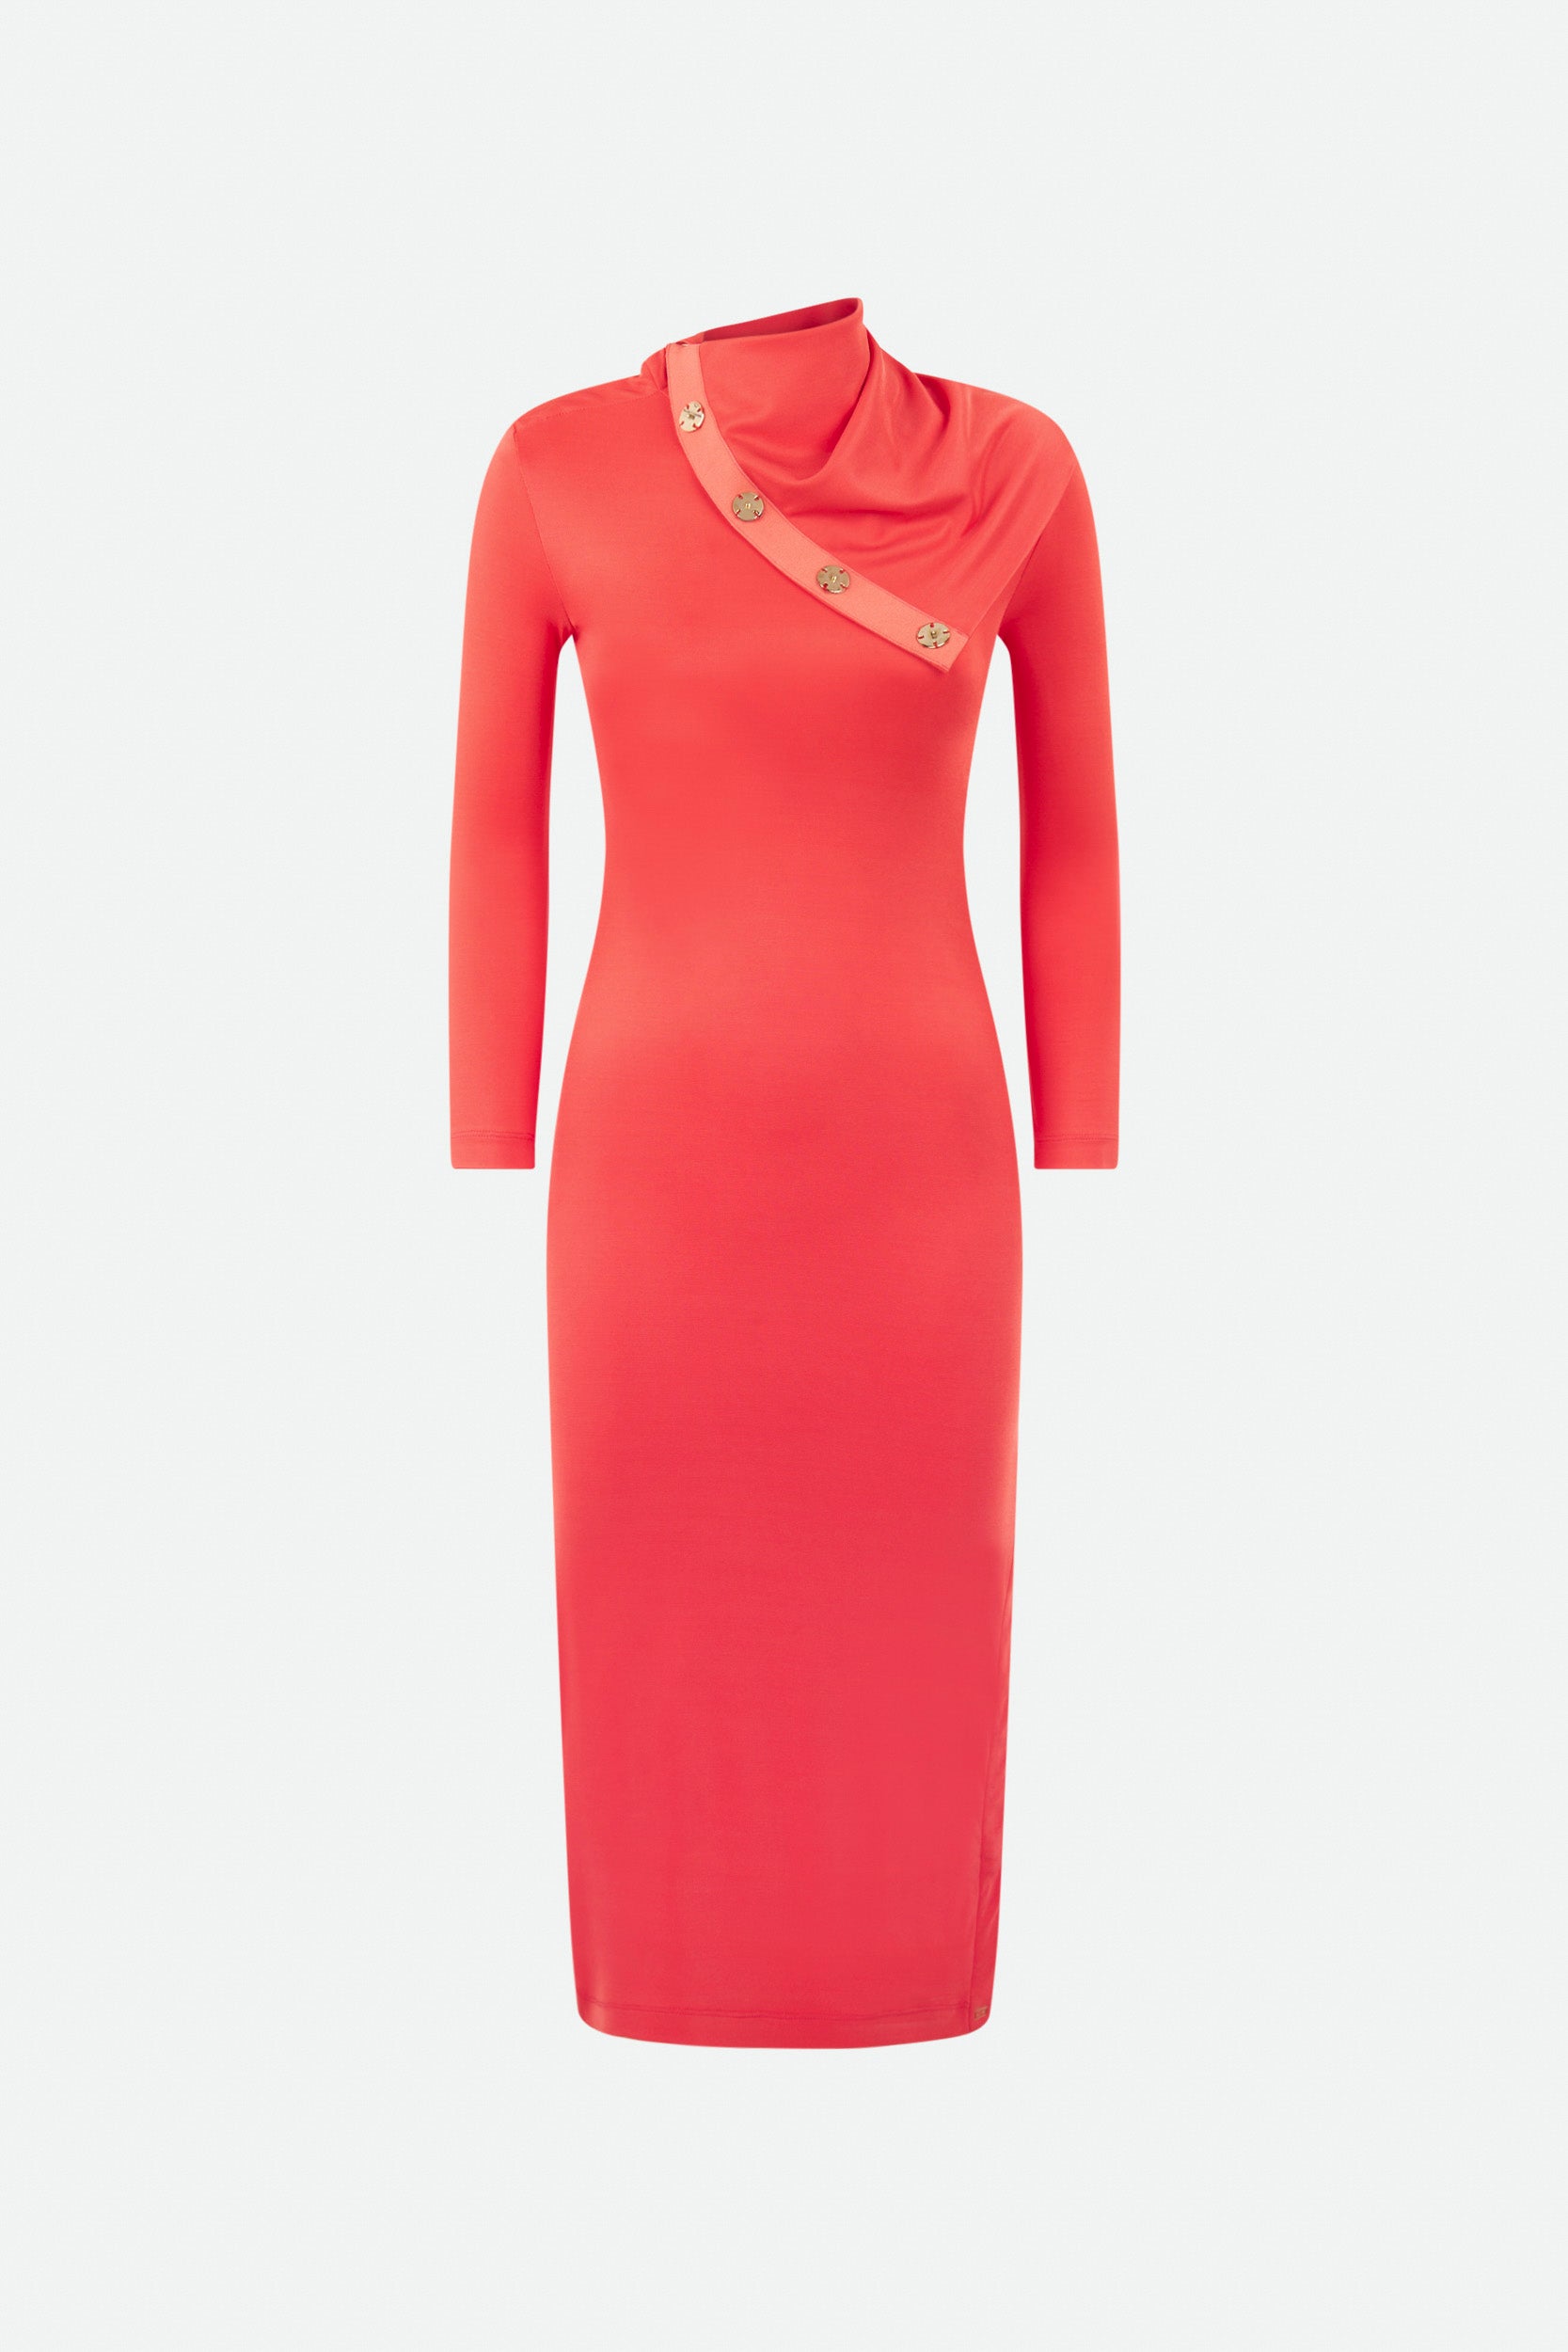 Rotes Kleid von Elisabetta Franchi